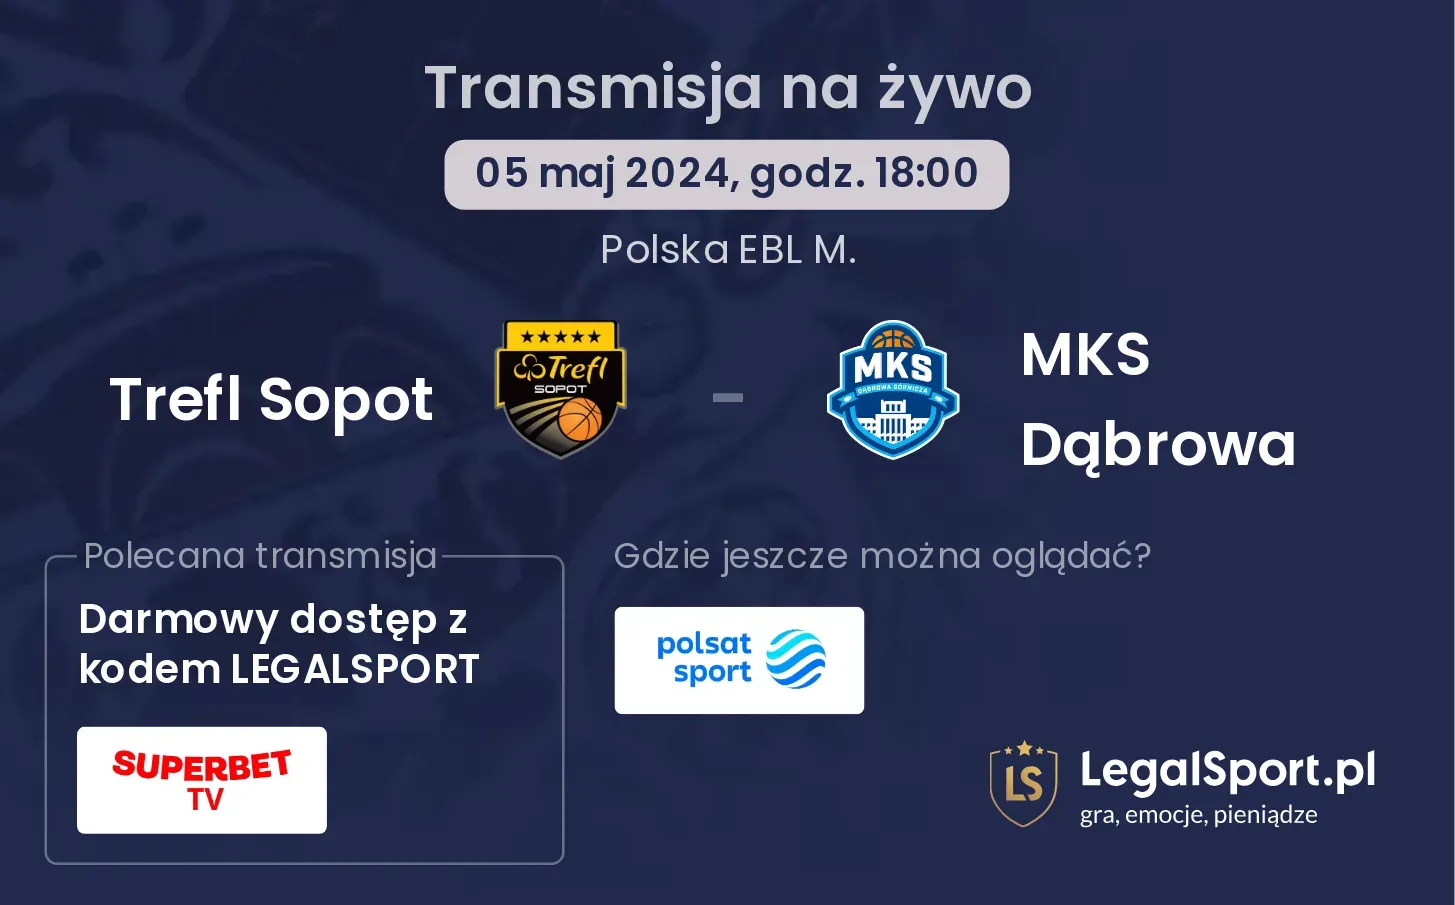 Trefl Sopot - MKS Dąbrowa transmisja na żywo